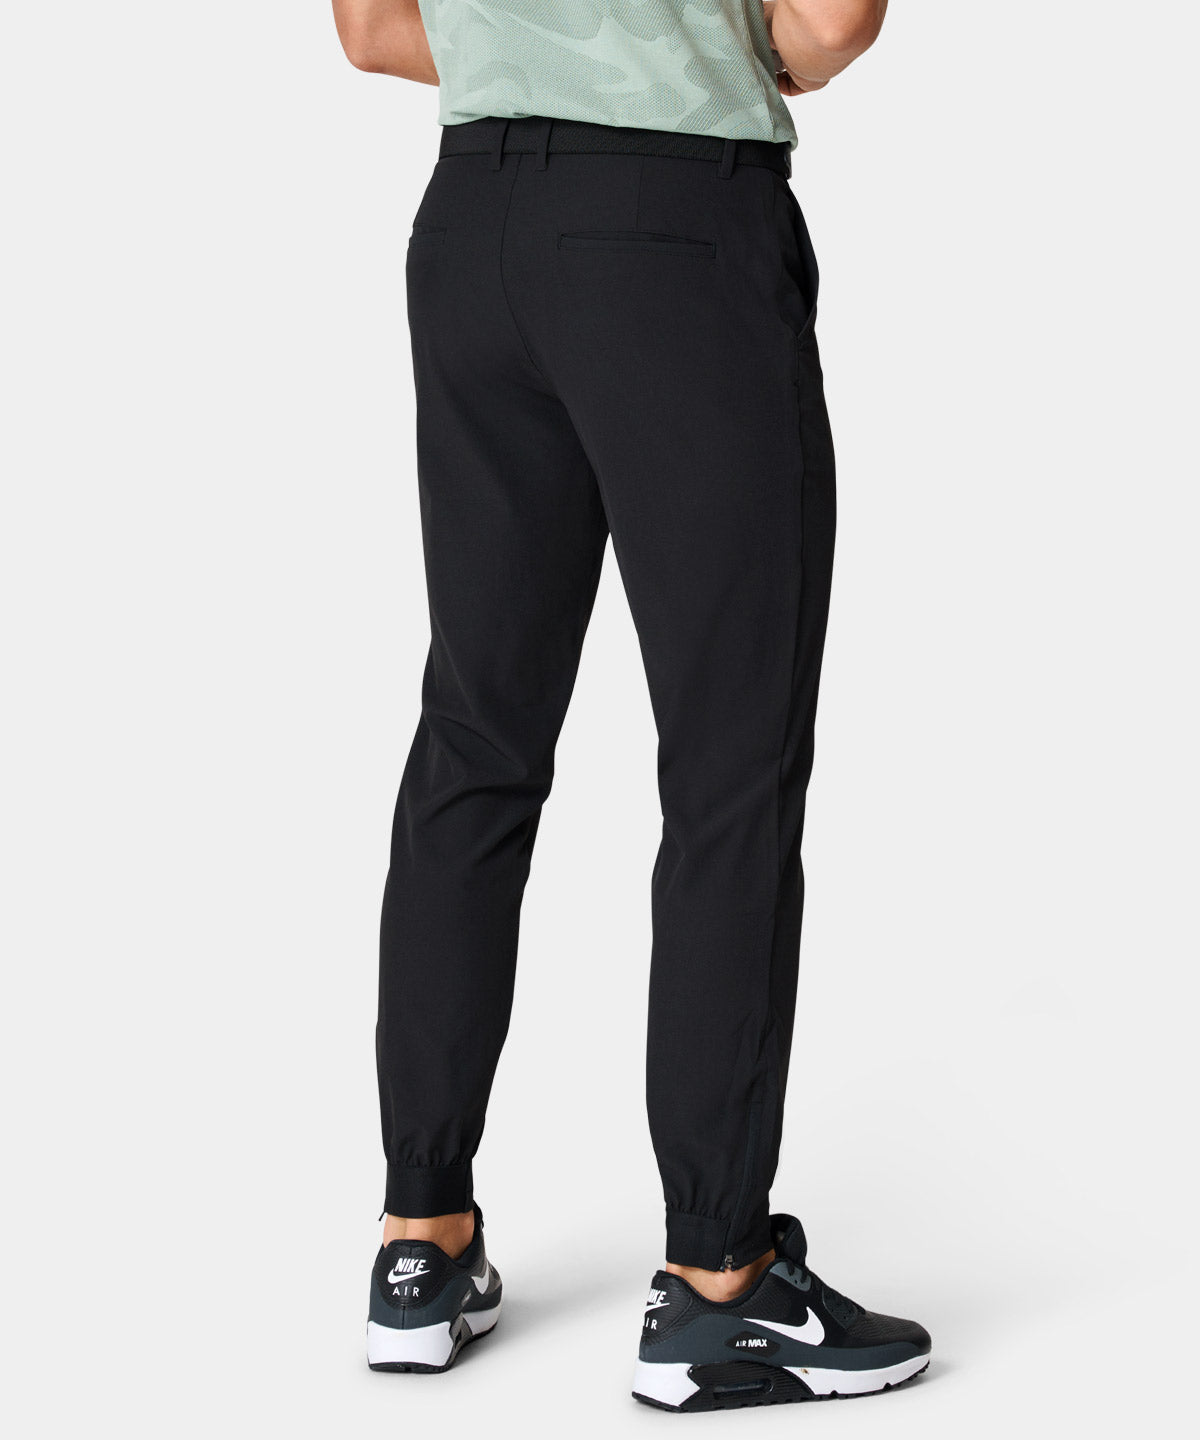 Nike | Pants | Nike Golf Dri Fit Black Golf Pants Mens Size 34x32 Swoosh  Logo | Poshmark